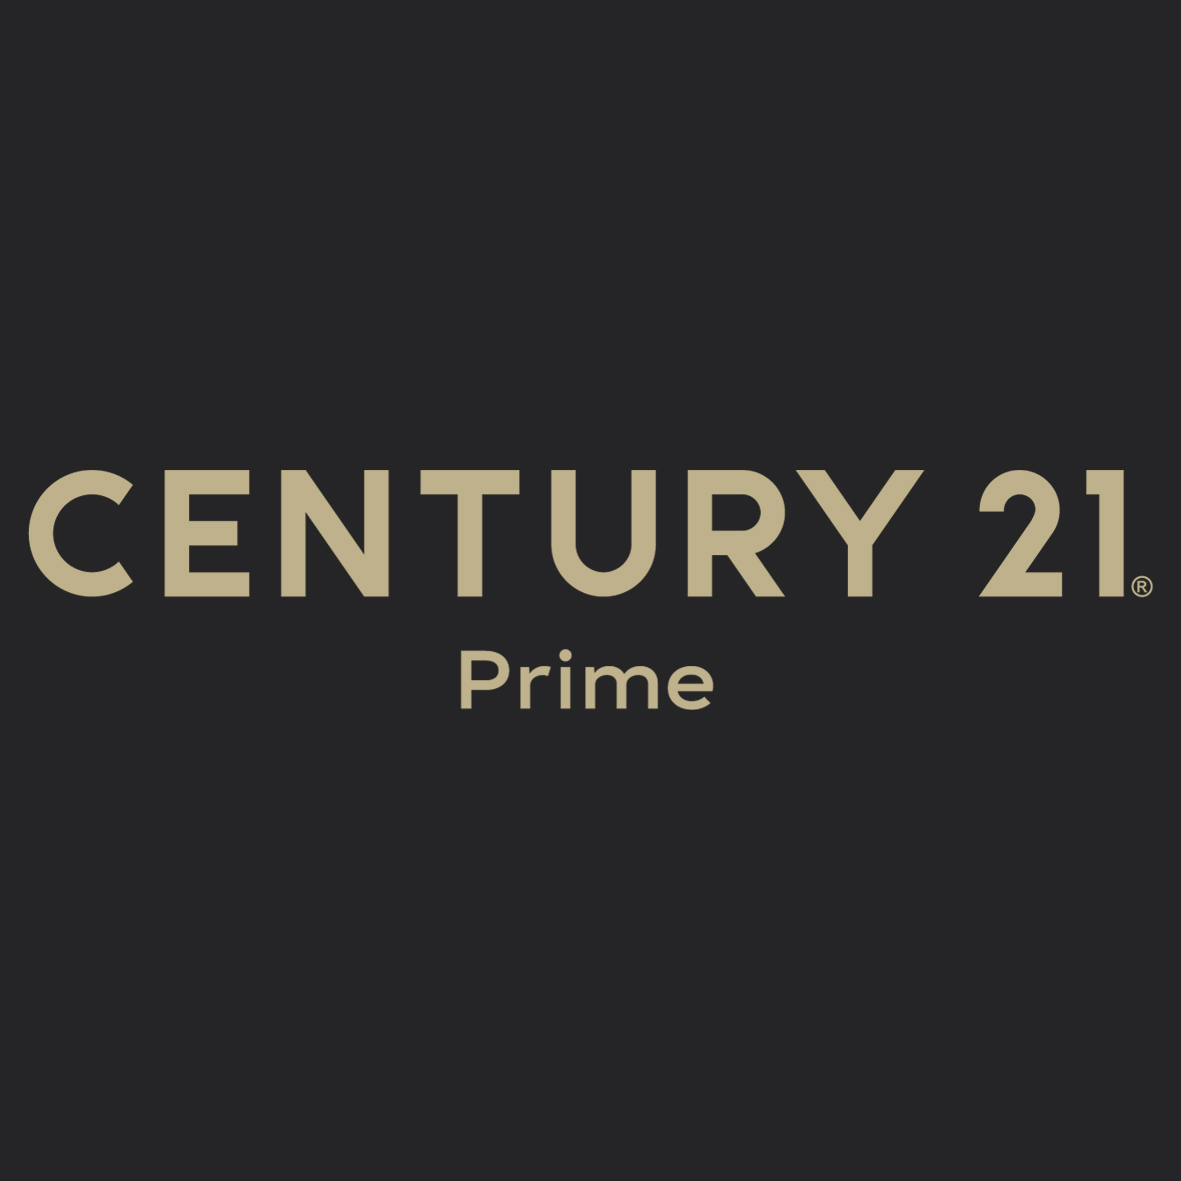 CENTURY 21 Prime